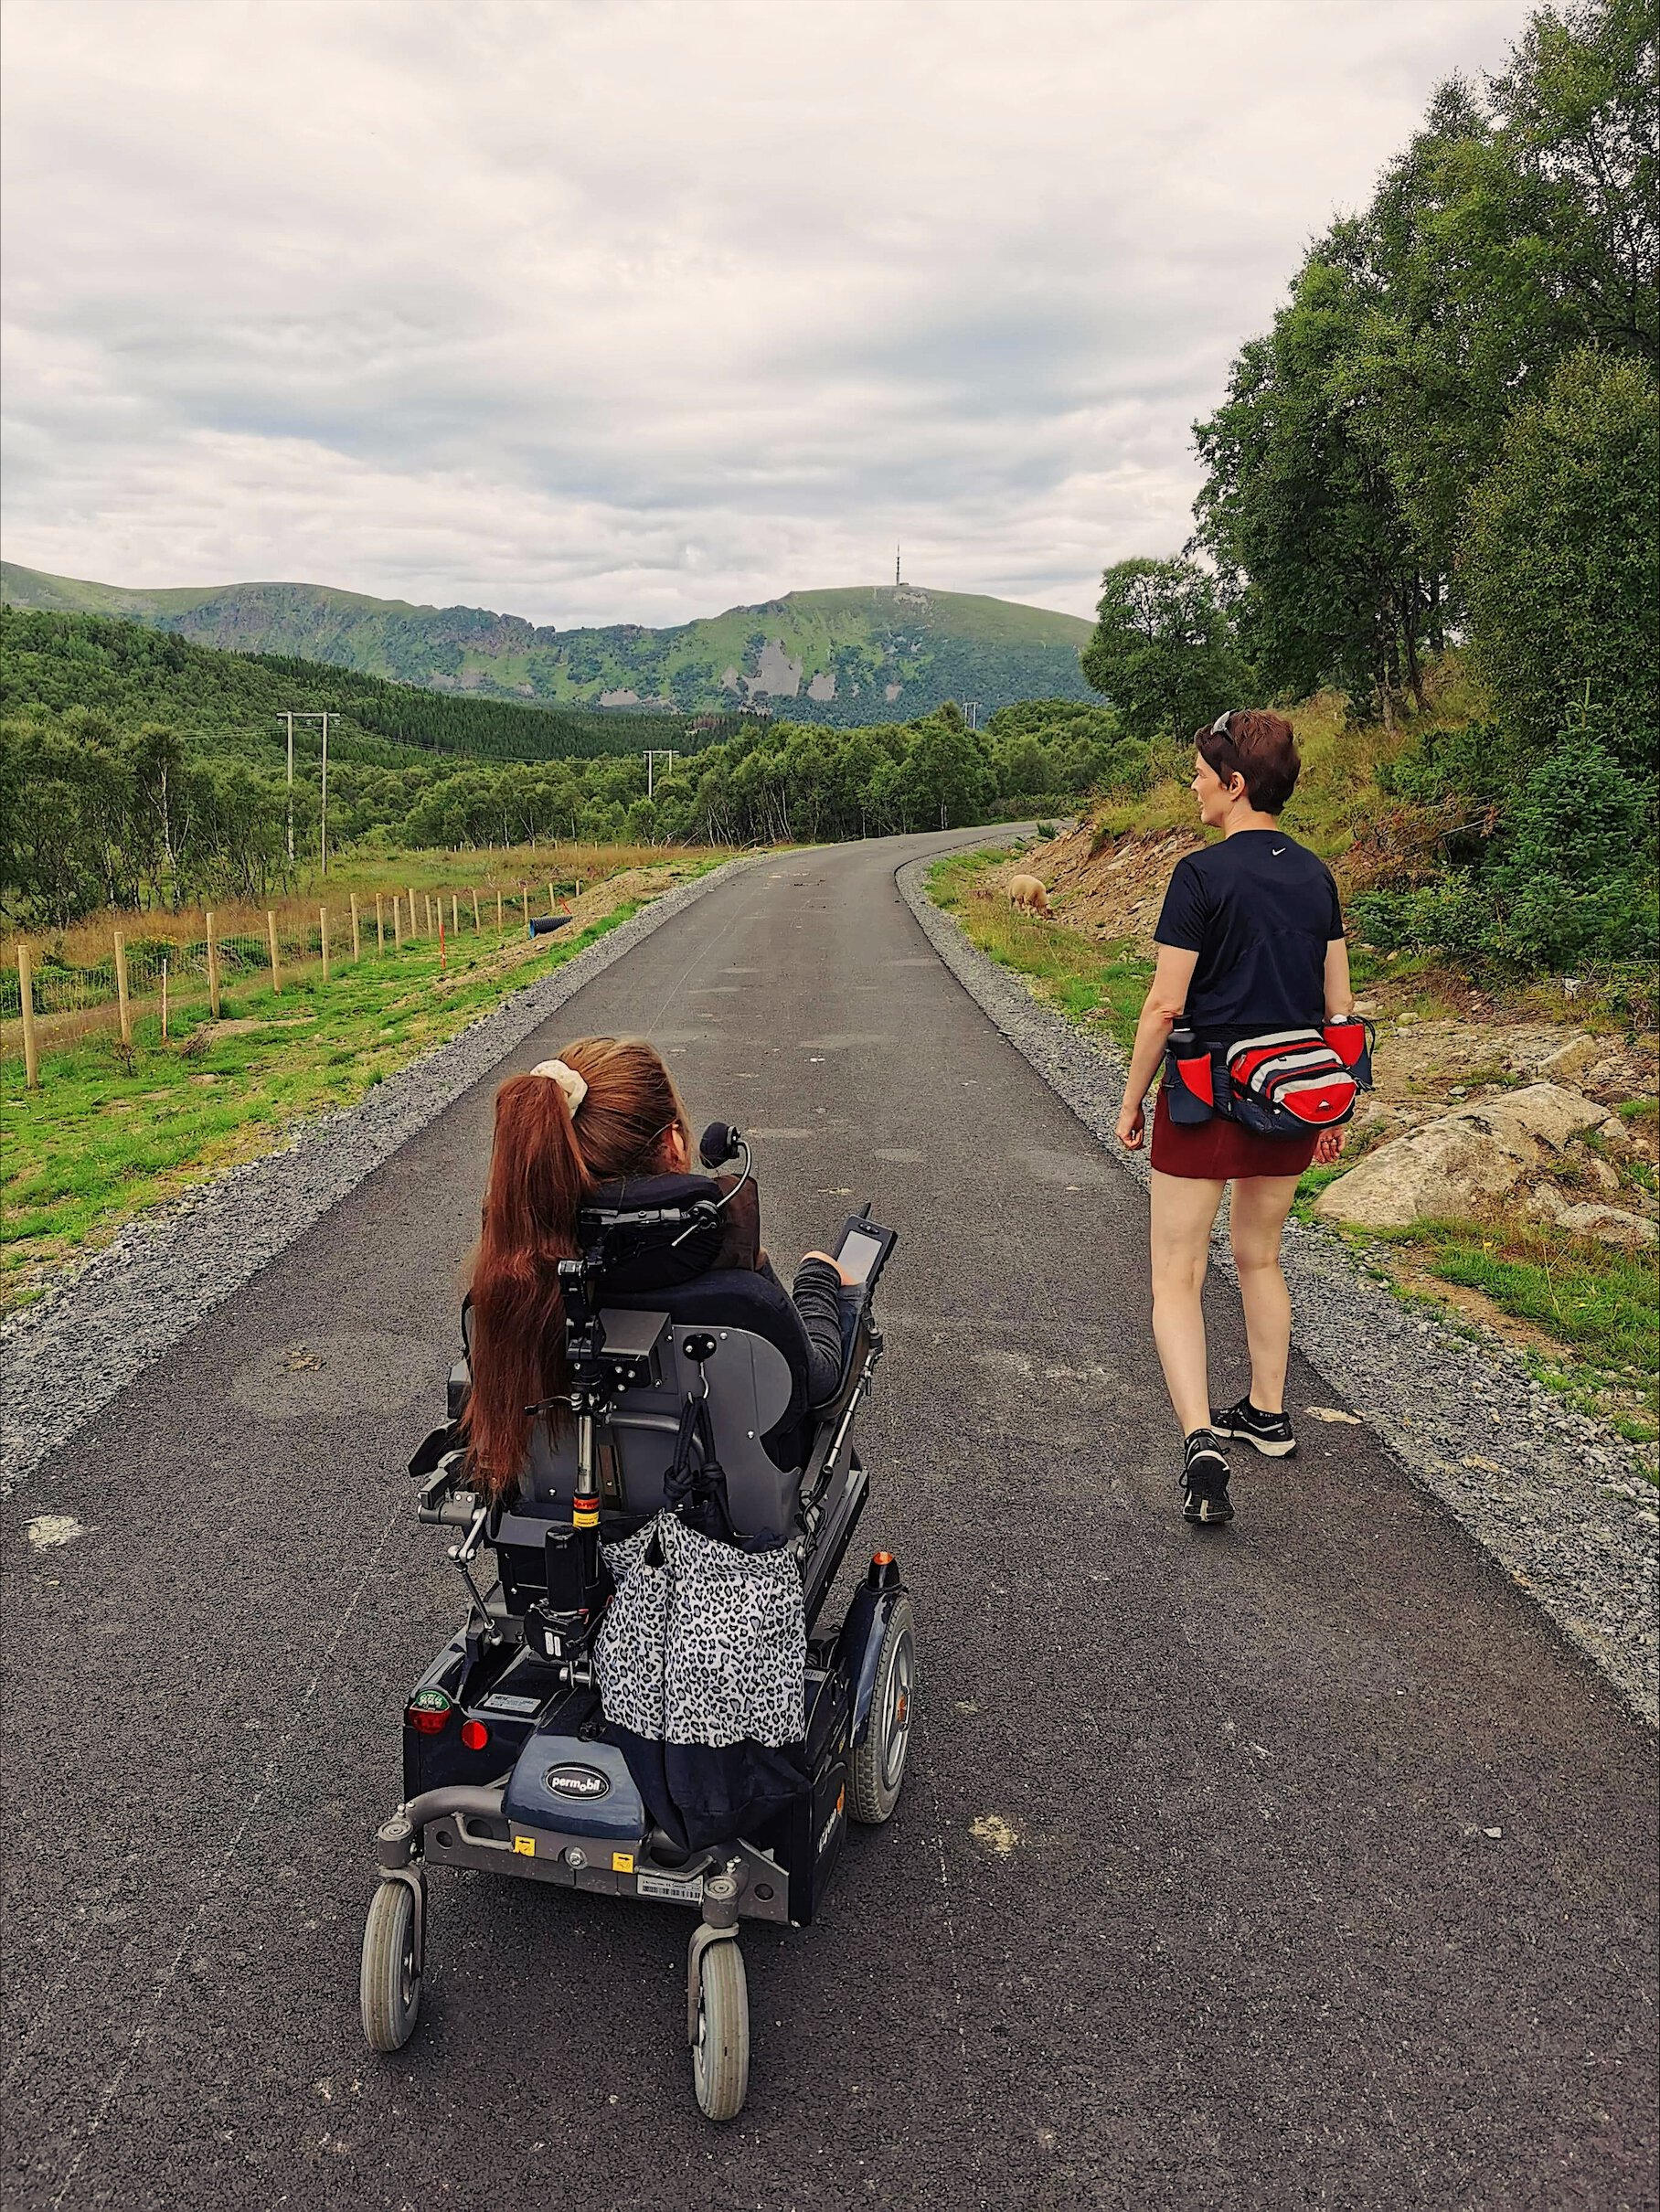 Ingeborg og hennes venninne på tur, veien er asfaltert. Det er fin natur, gresset er grønt, og fjellet kan skimtes i bakgrunn. 